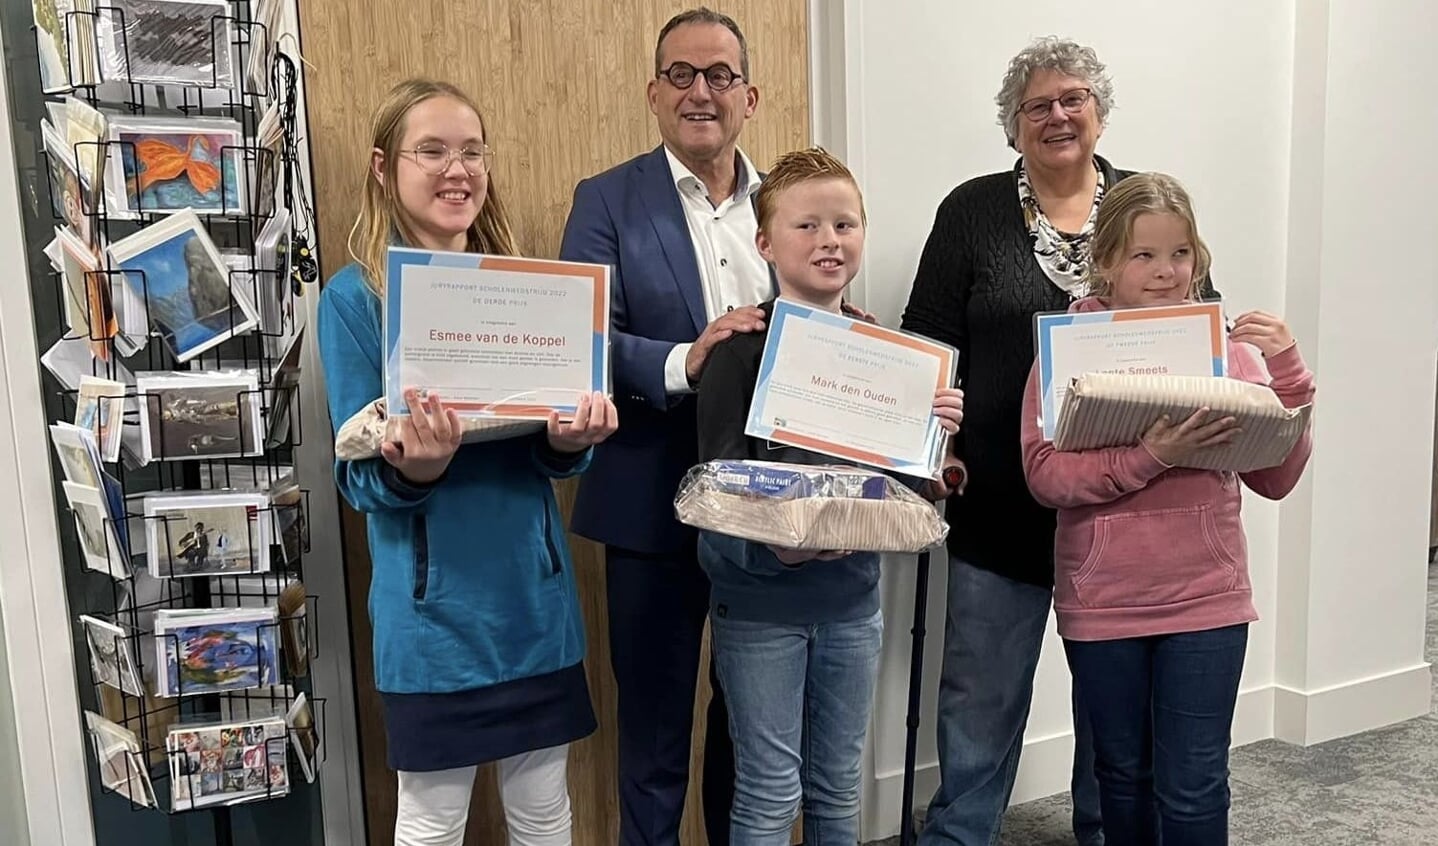 De winnaars van het Scholenproject van Goed Gezien - Goed Bekeken ontvingen hun prijs uit handen van Johan Quik, wethouder van cultuur van de gemeente Molenlanden.